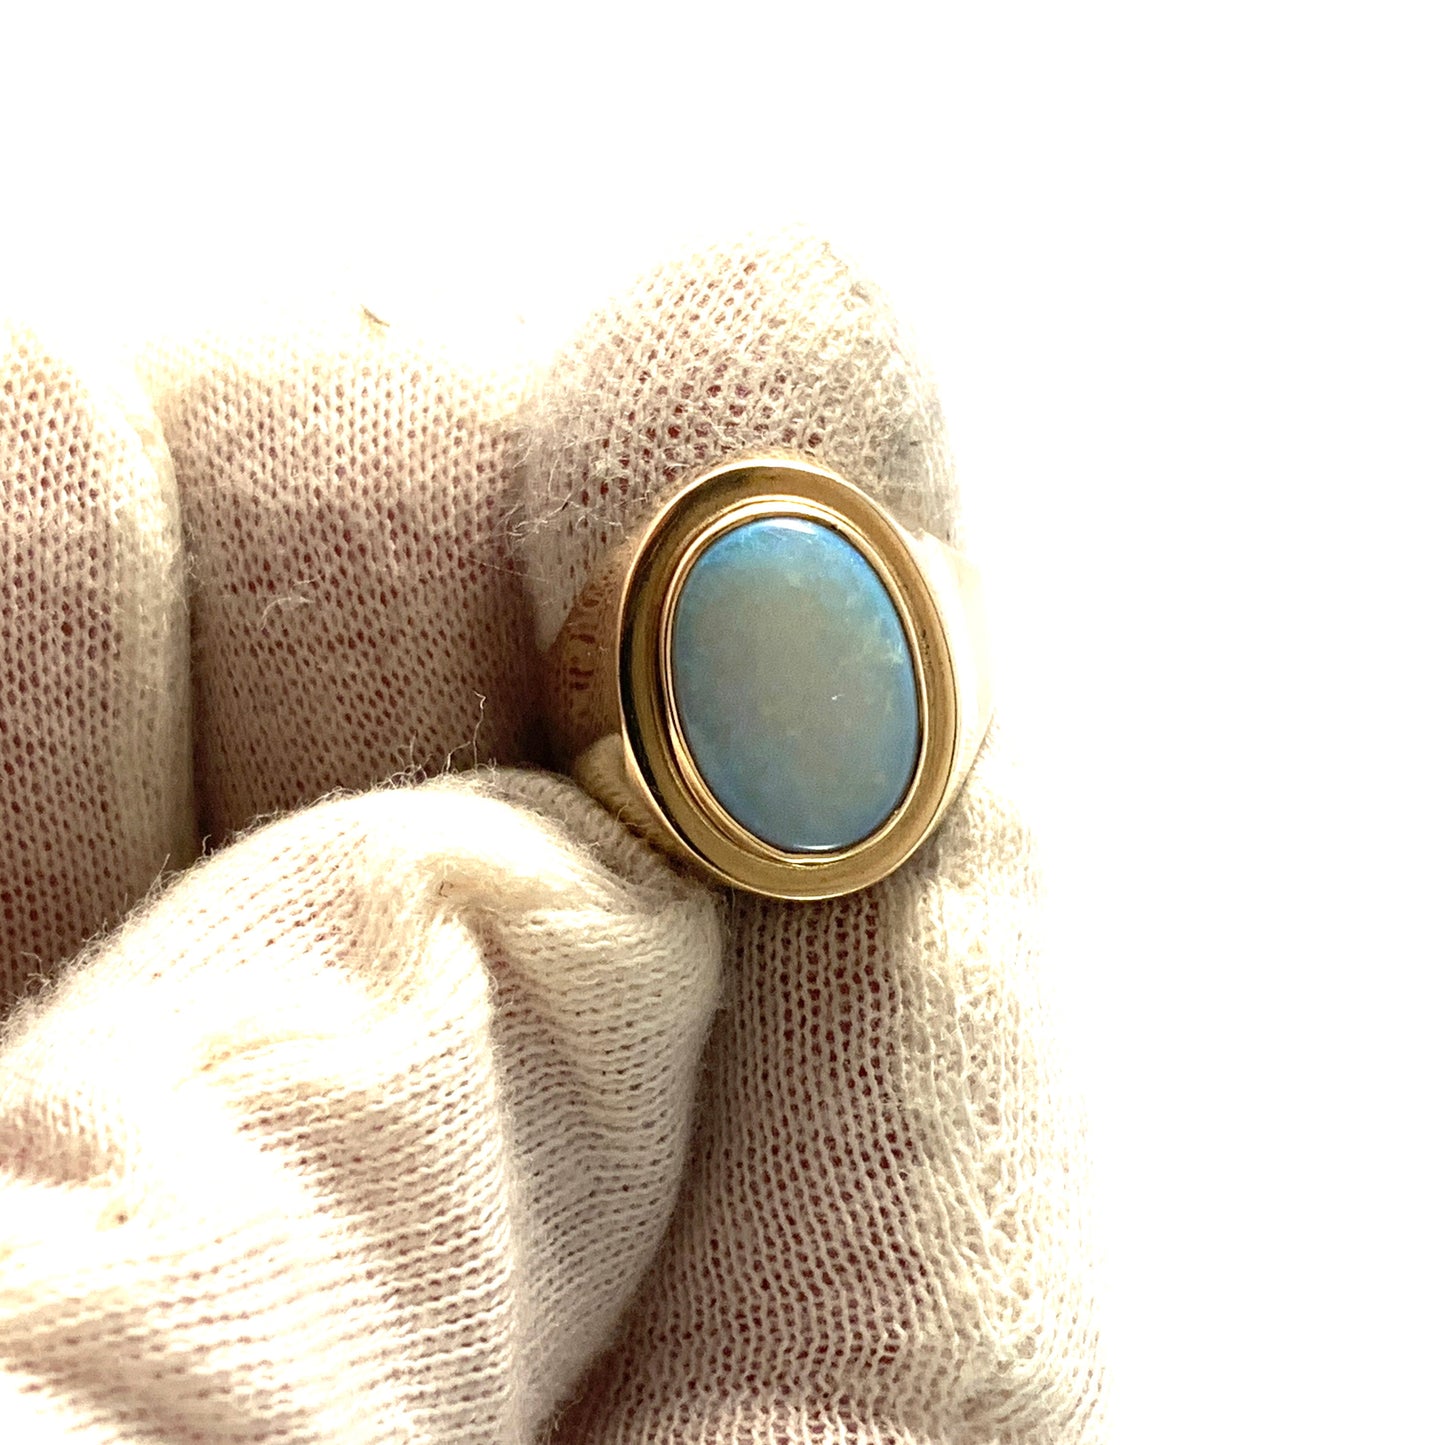 Erik Poul Fenster, Denmark 1950s. Vintage 14k Gold Opal Unisex Ring.